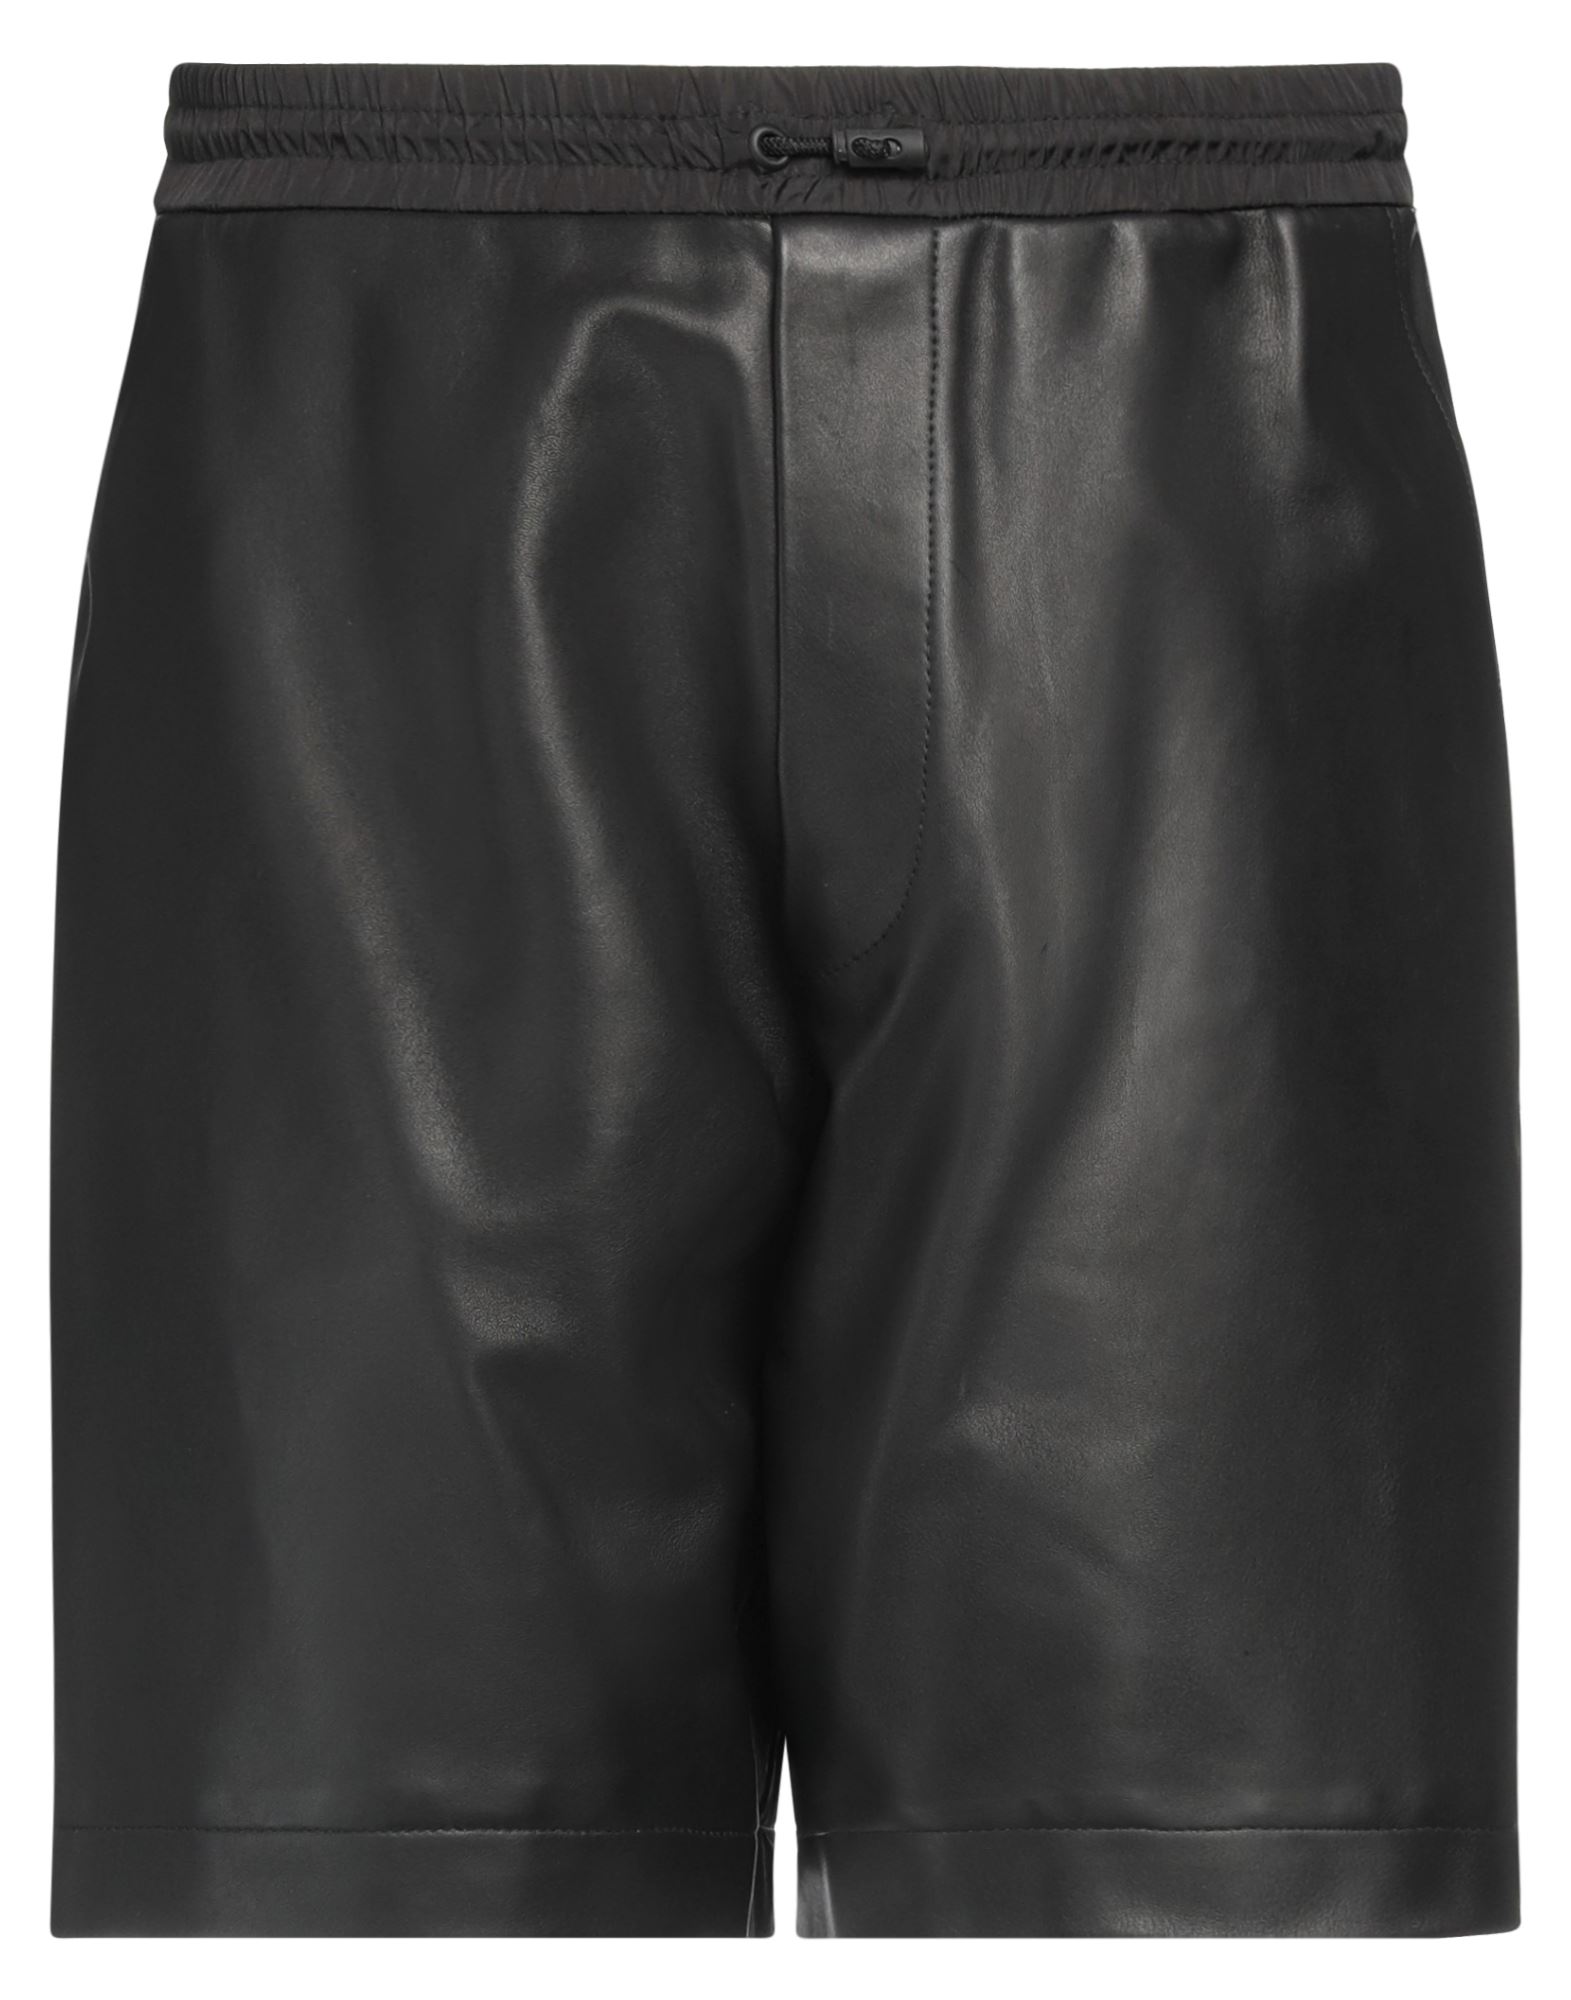 Dsquared2 Man Shorts & Bermuda Shorts Black Size 36 Ovine Leather